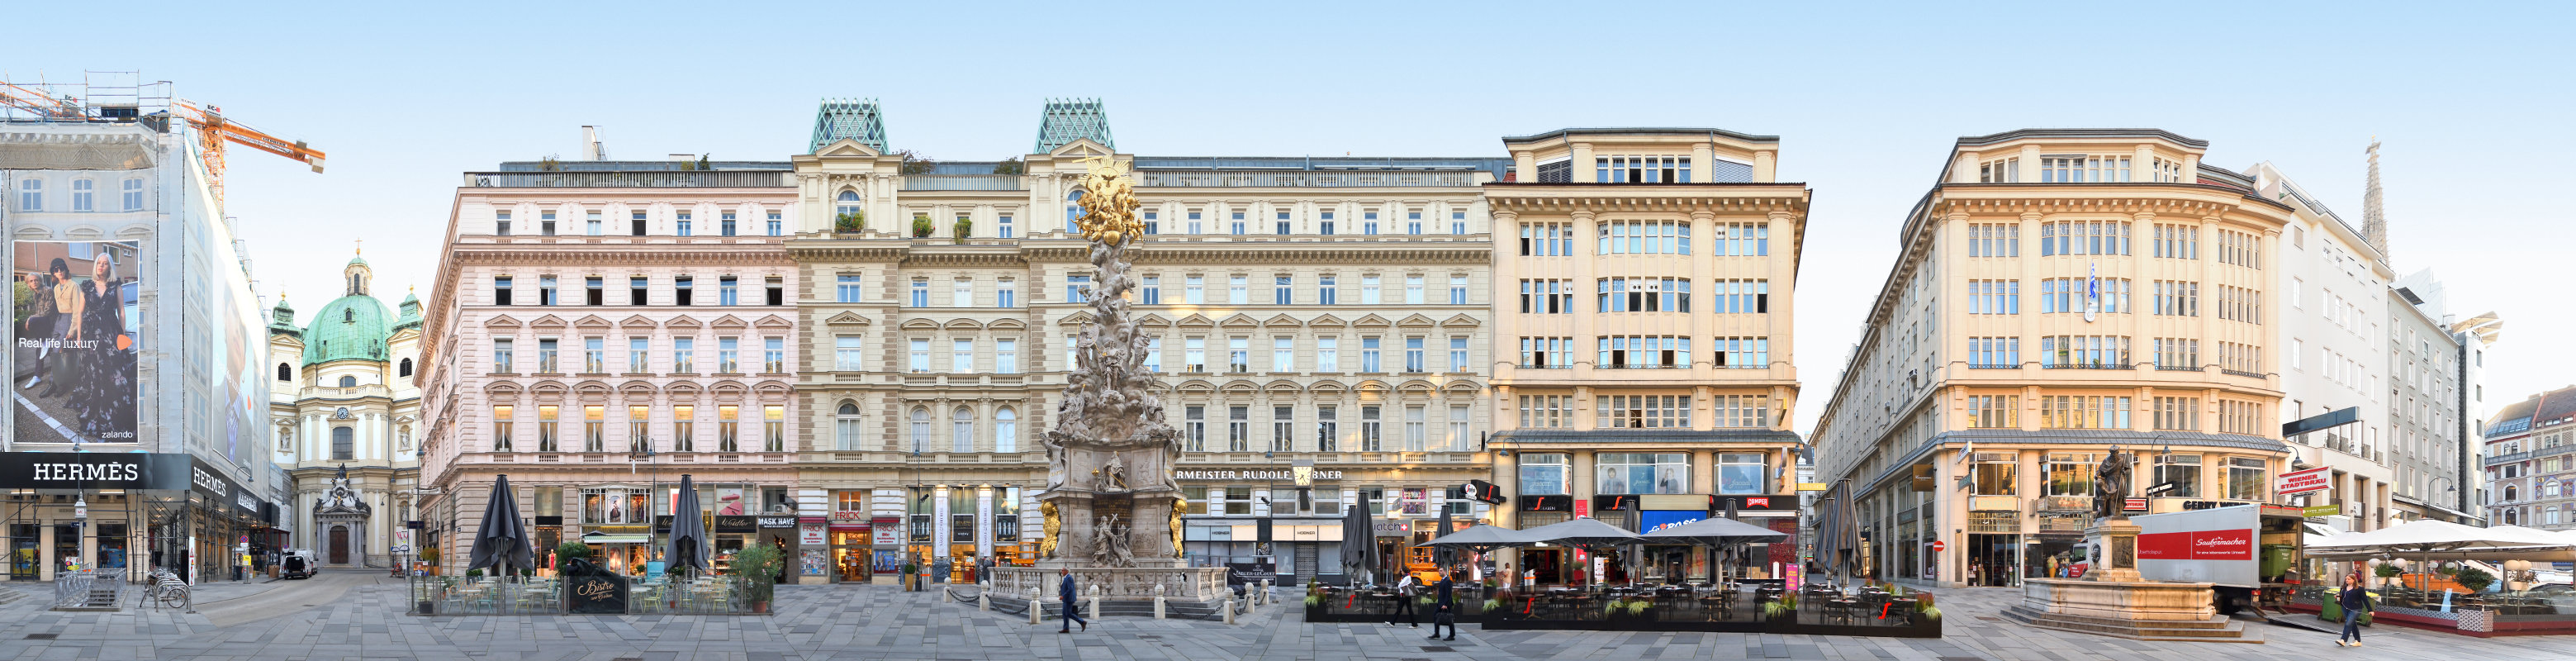 Pestsäule und Graben Panorama der Fassaden und Architektur in der Hauptstadt Österreichs